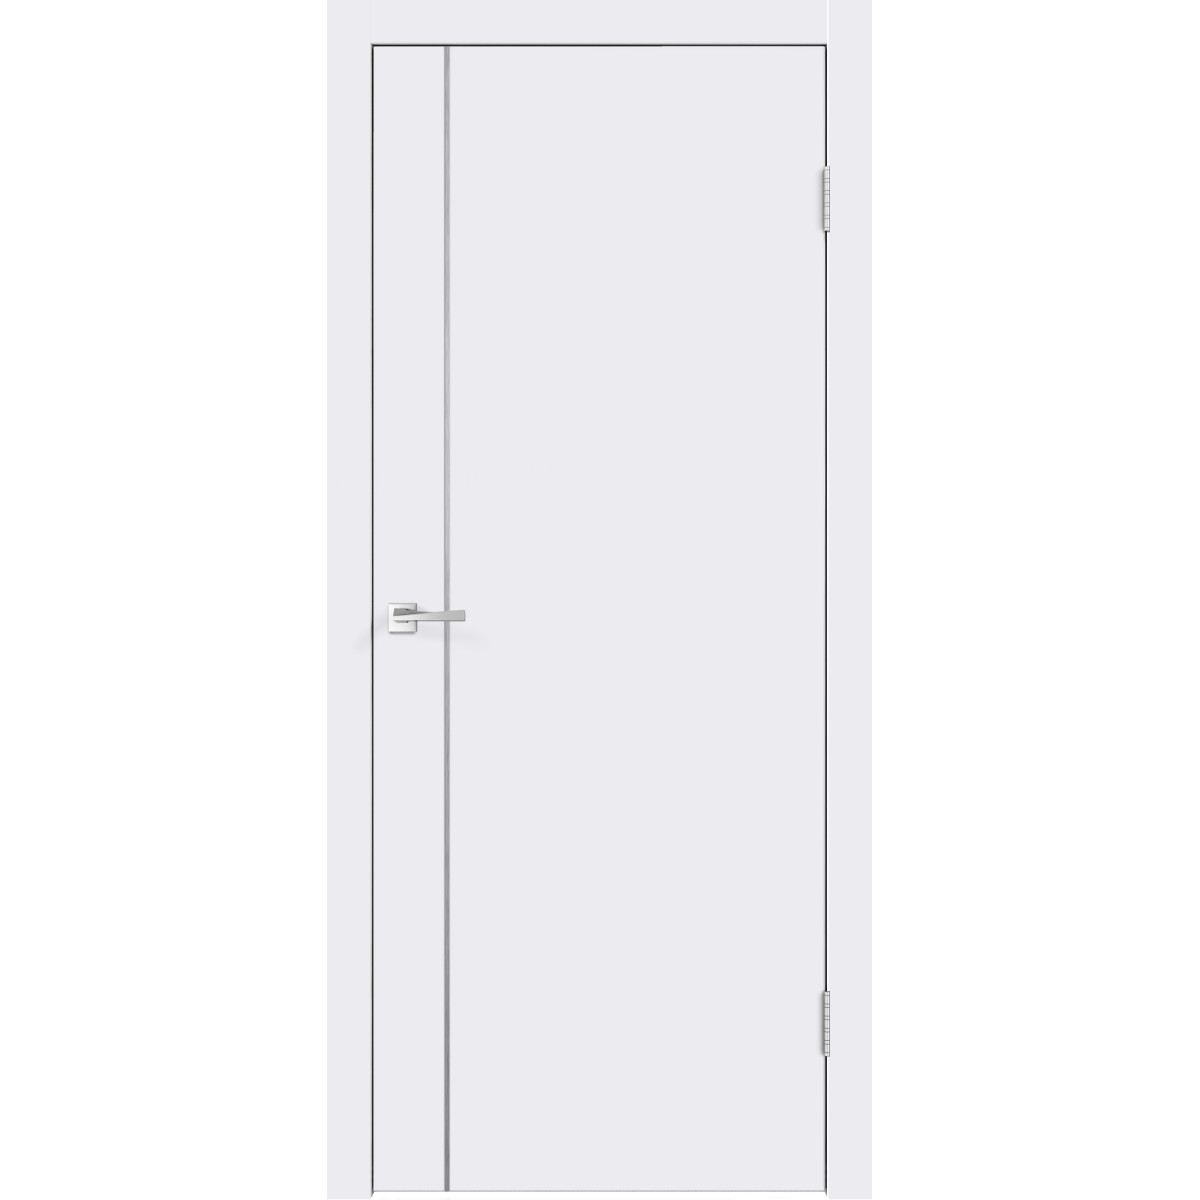 Дверь межкомнатная Смарт М1 70х200 крашеная с фурнитурой, цвет белый